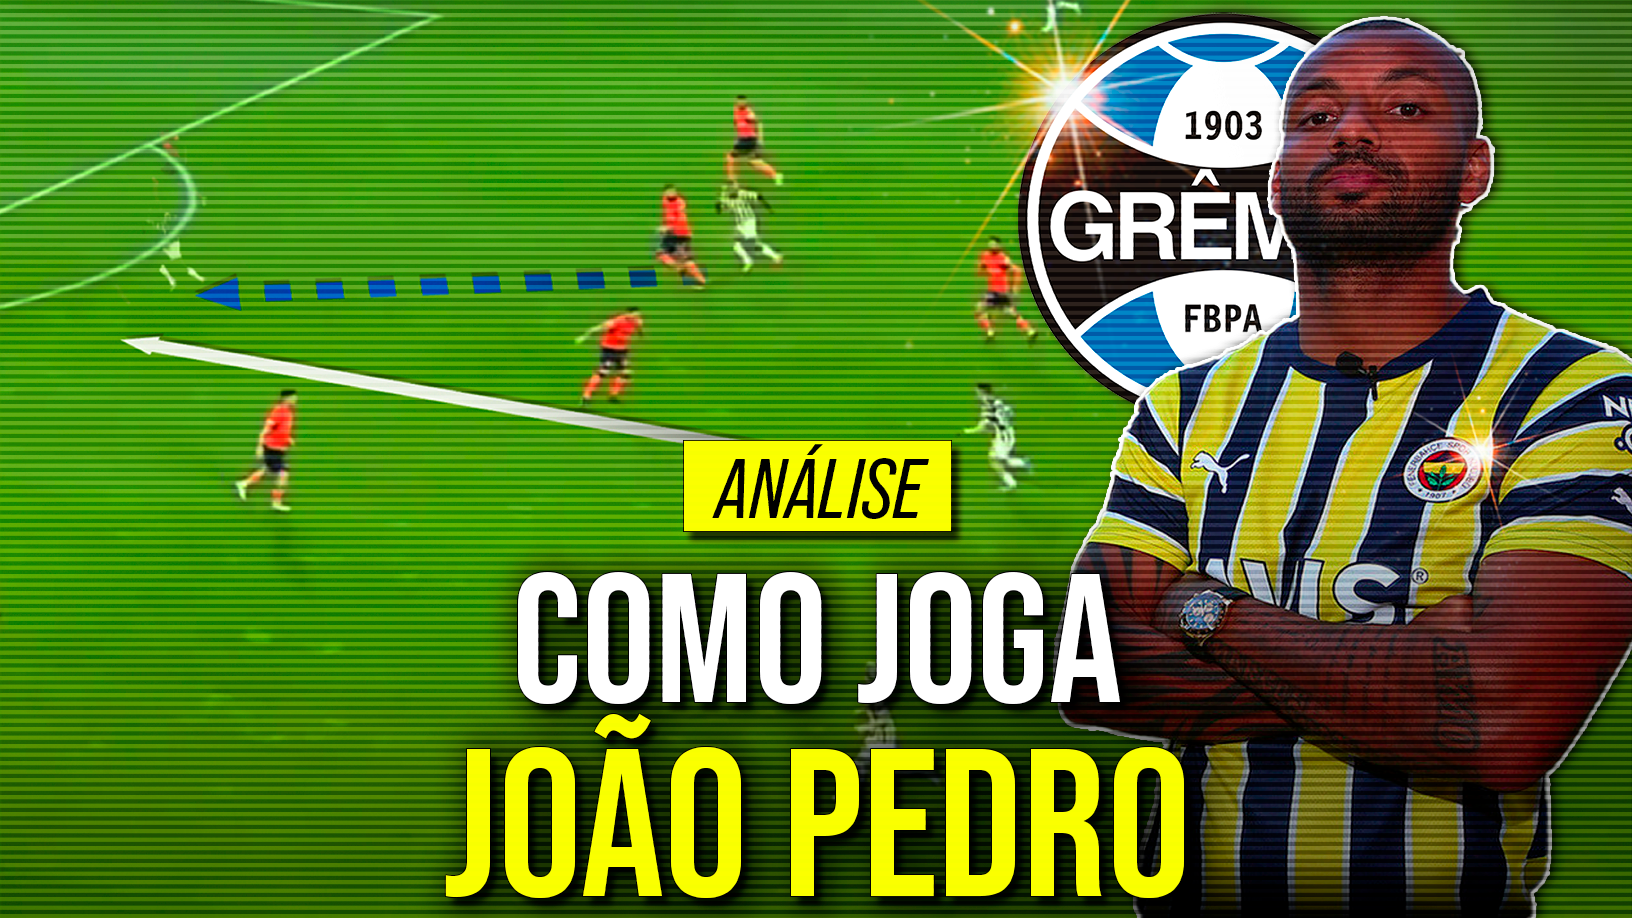 Como joga João Pedro, novo atacante do Grêmio